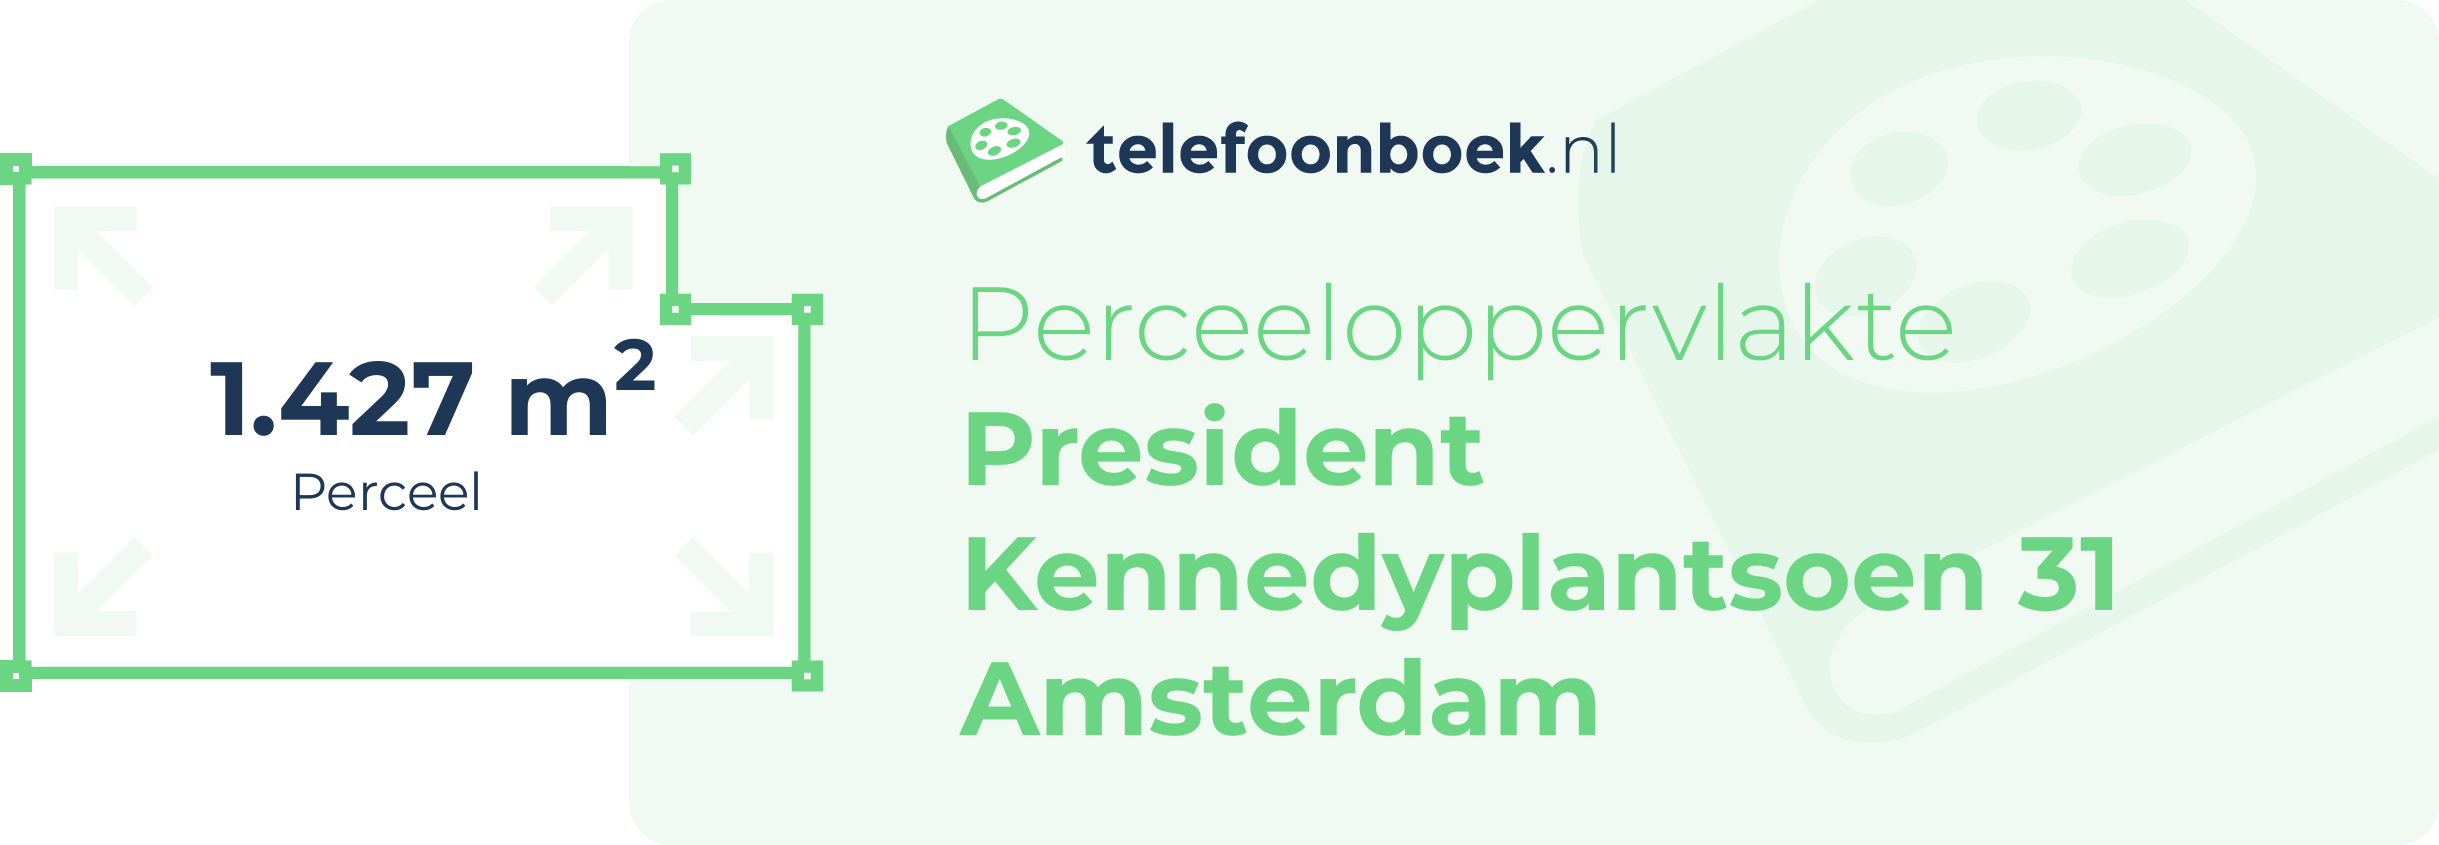 Perceeloppervlakte President Kennedyplantsoen 31 Amsterdam